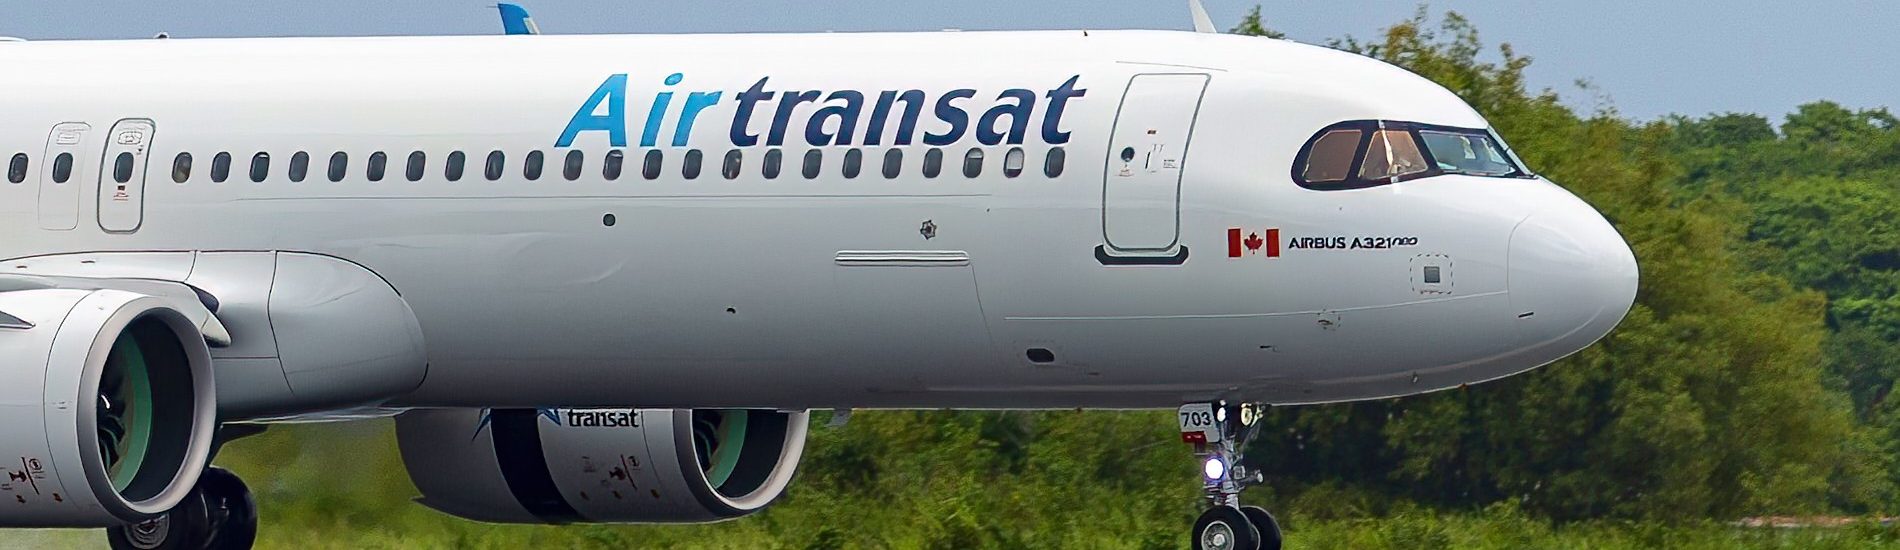 A321-200LR Air Transat C-GOIH